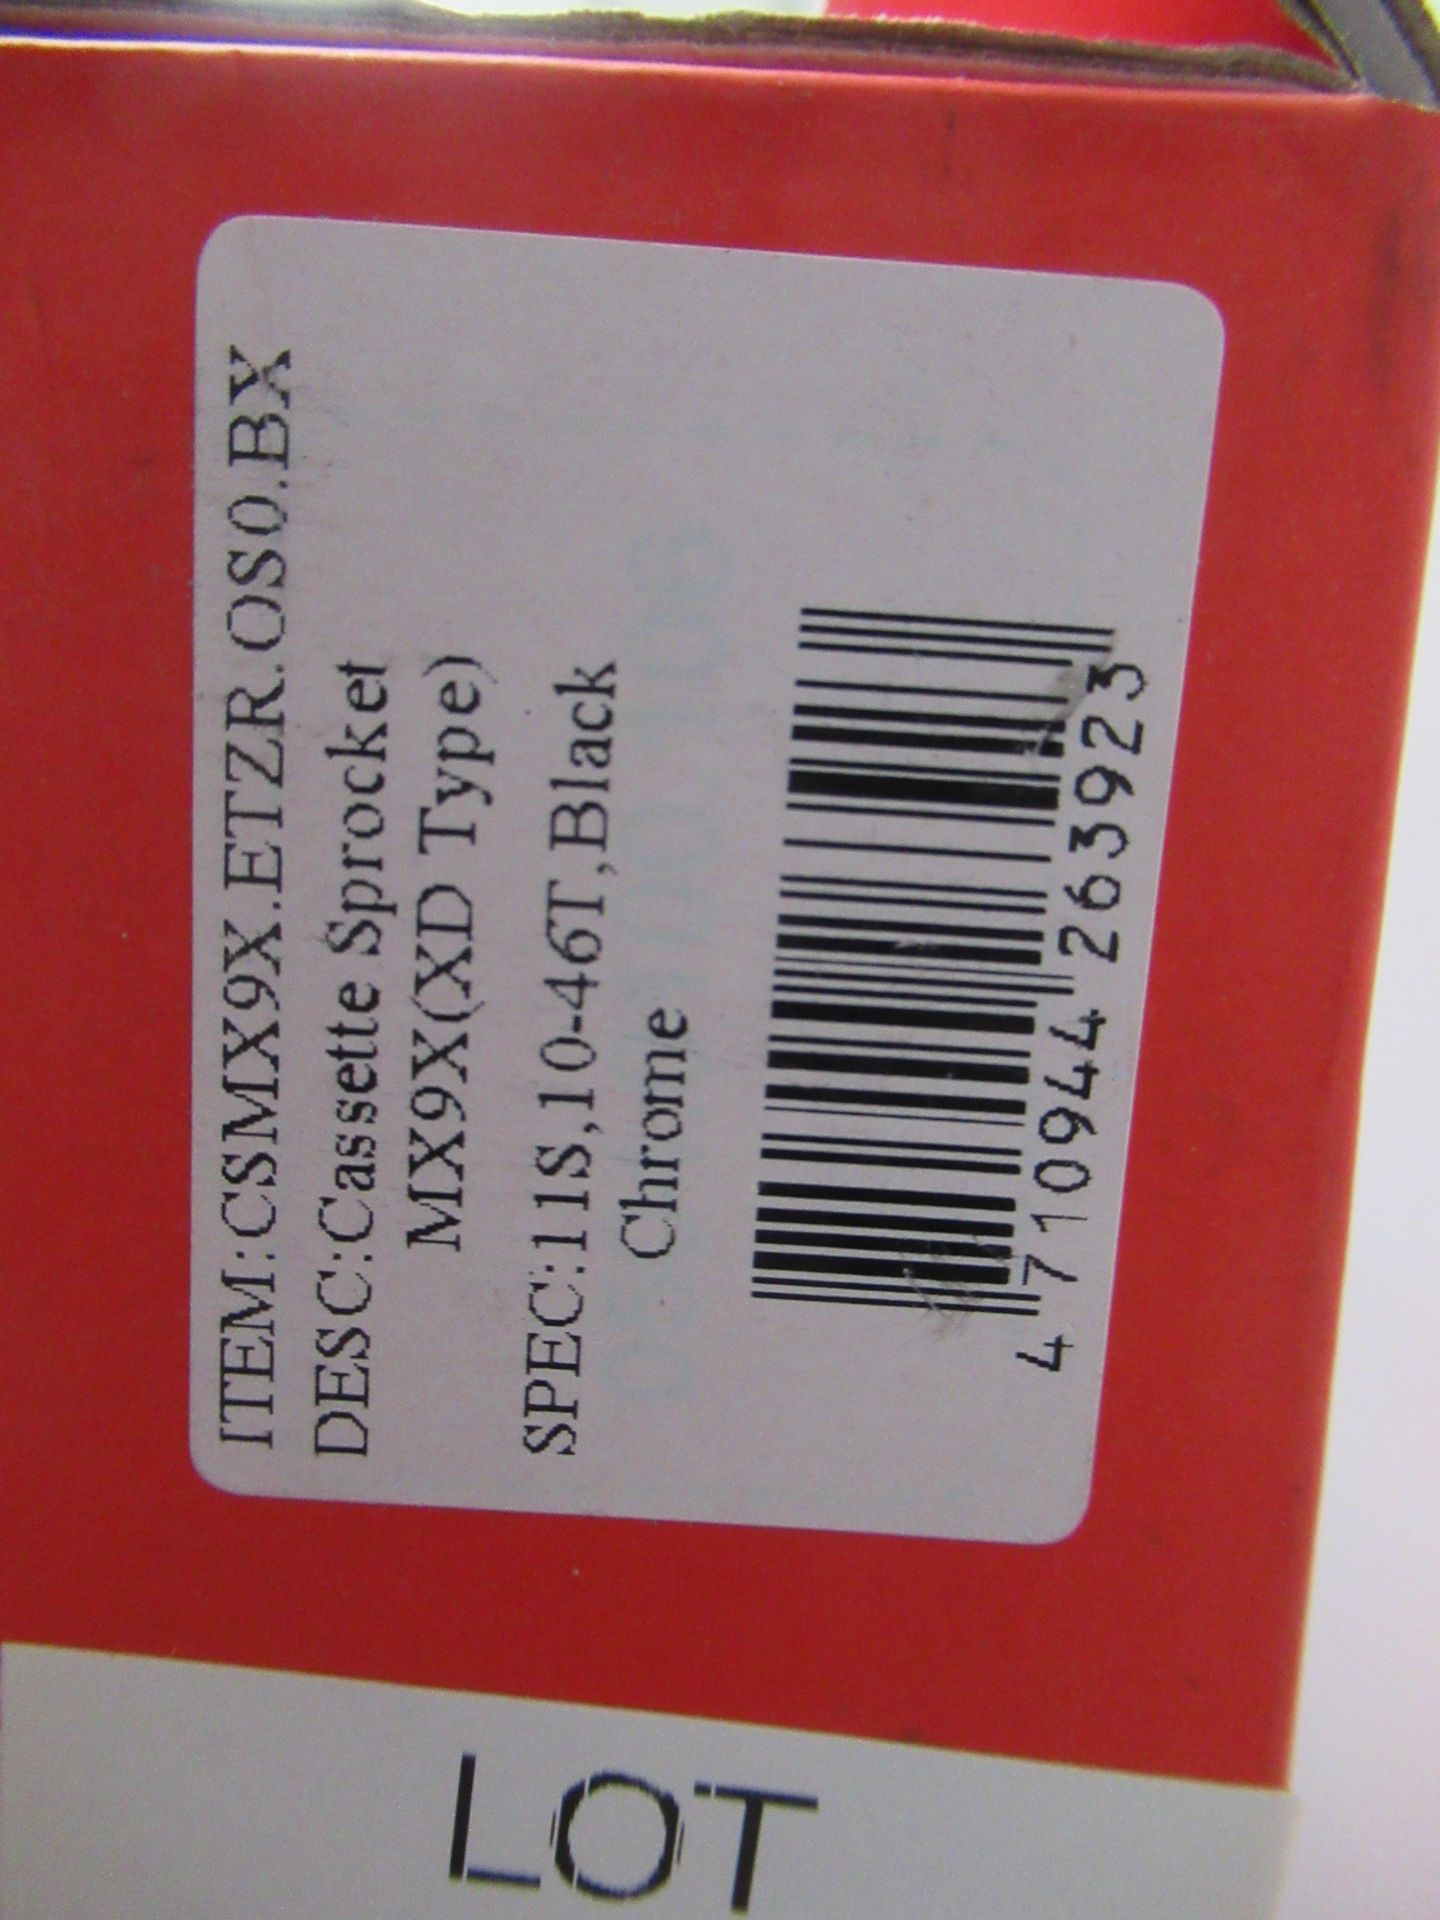 SunRace CSMX9X 11-SPD 10-46T Cassette Sprocket (RRP133.99) - Image 2 of 2